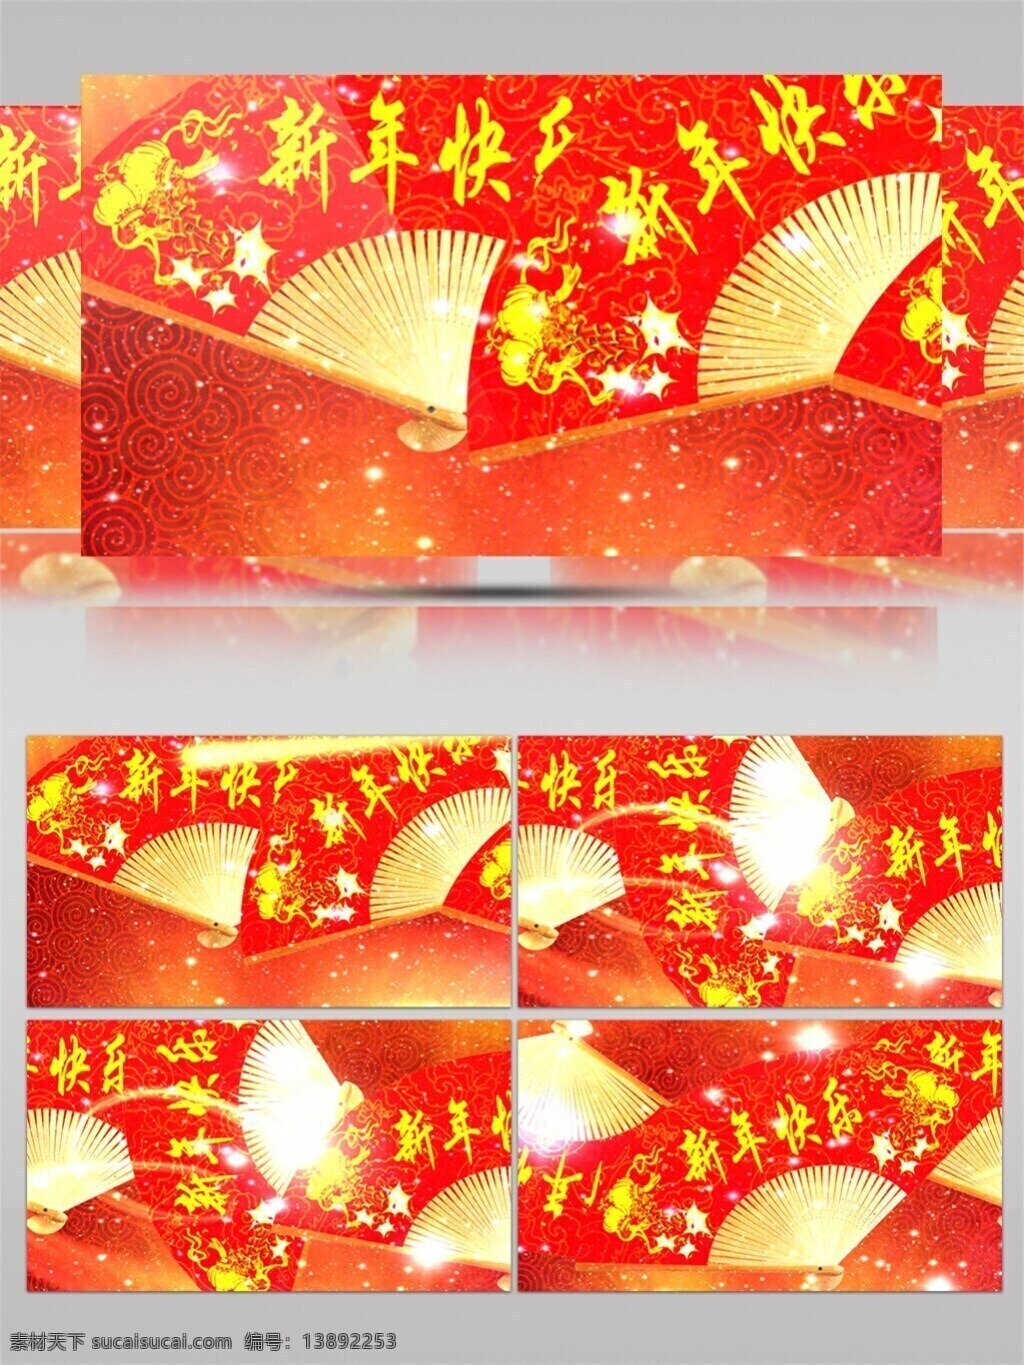 富贵 喜庆 高清 视频 3d视频素材 春节庆祝 红色扇子 画面意境 节日庆祝 生活抽象 生活创意 文字logo